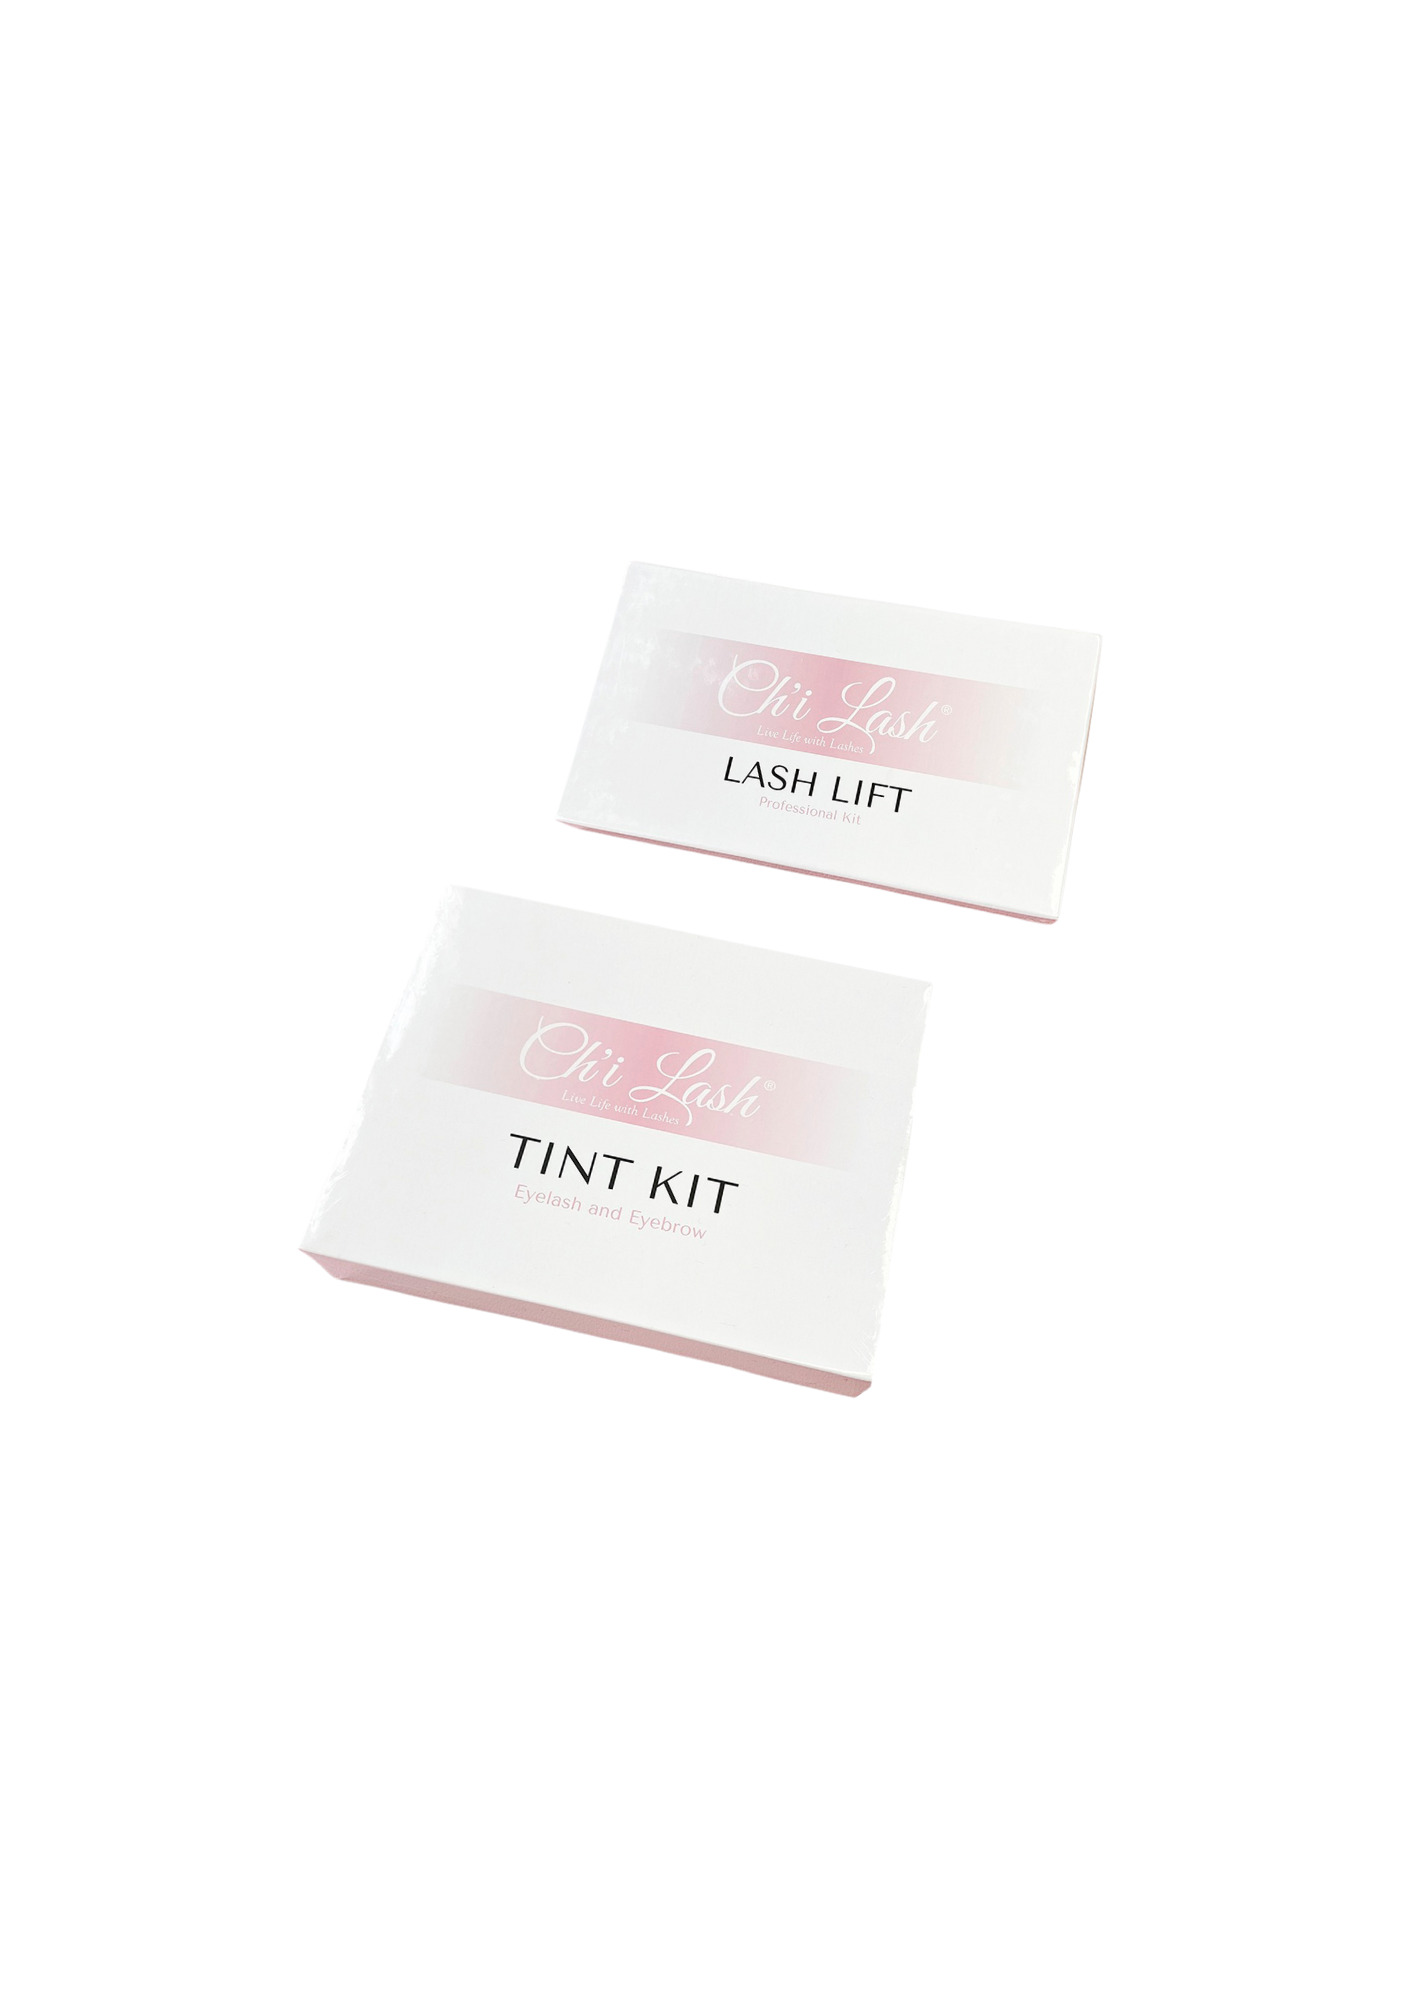 Lash Lift and Tint Kit